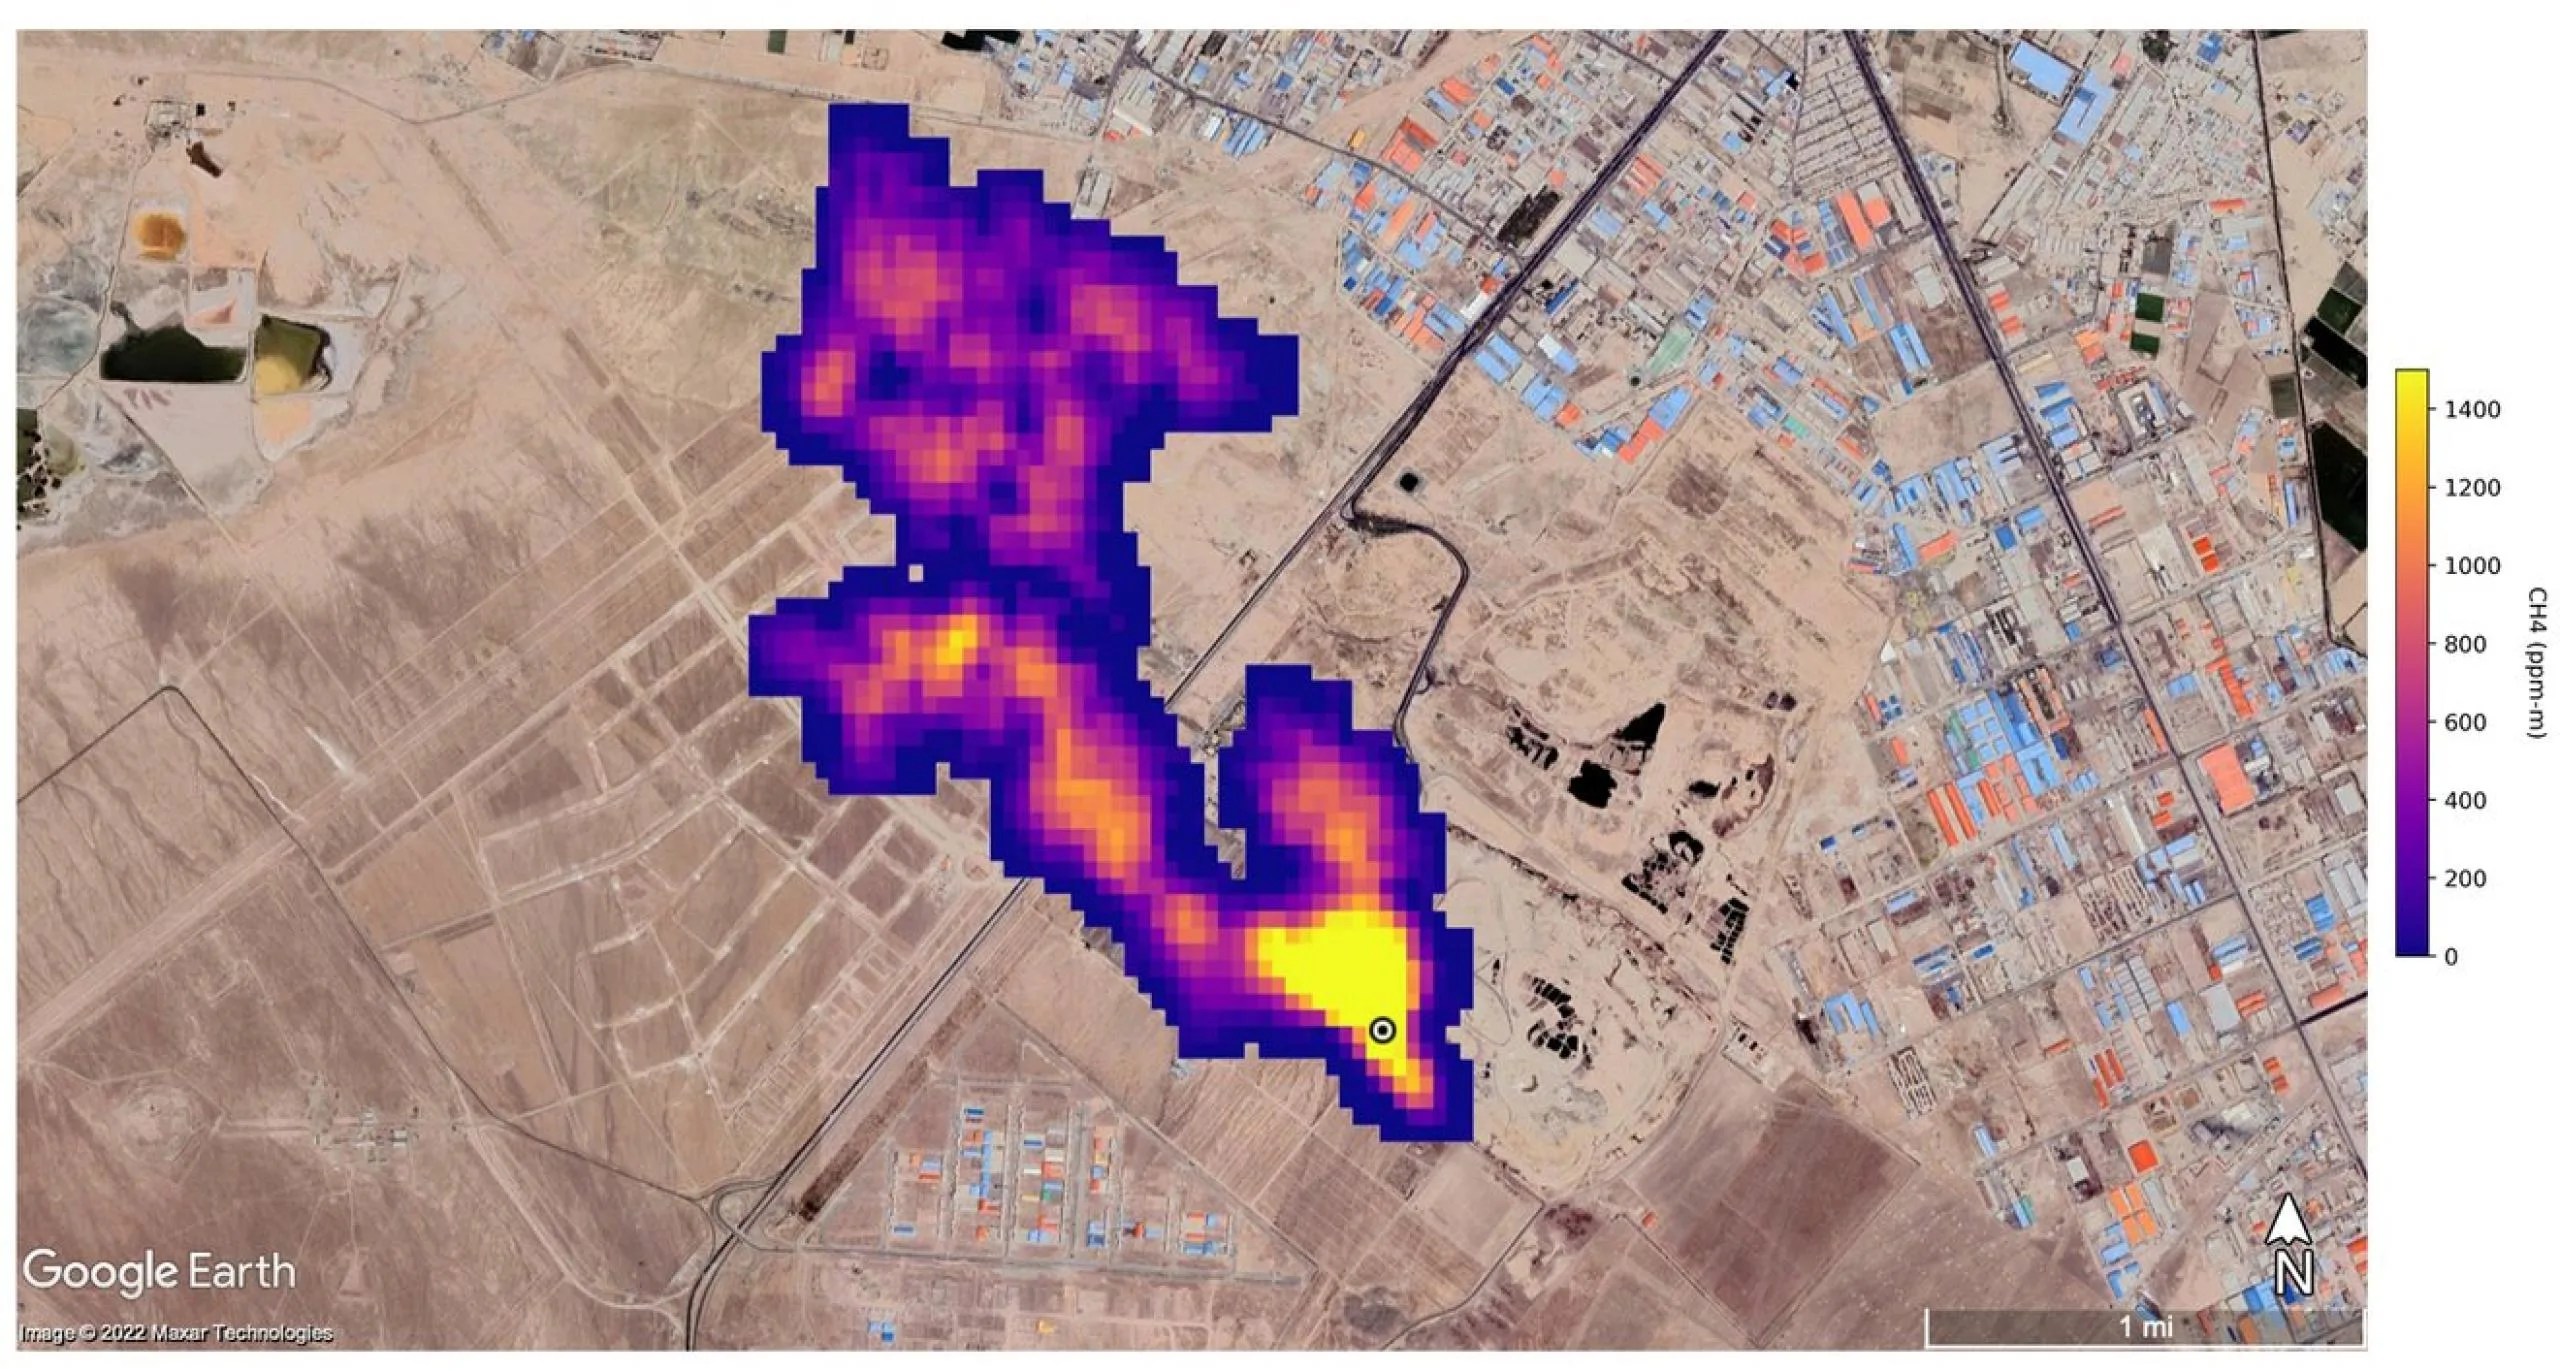 Un penacho de metano de al menos 4,8 kilómetros (3 millas) de longitud se eleva hacia la atmósfera al sur de Teherán, Irán. El penacho, detectado por la misión EMIT de la NASA, proviene de un gran vertedero, donde el metano es un subproducto de la descomposición. Crédito: NASA/JPL-Caltech